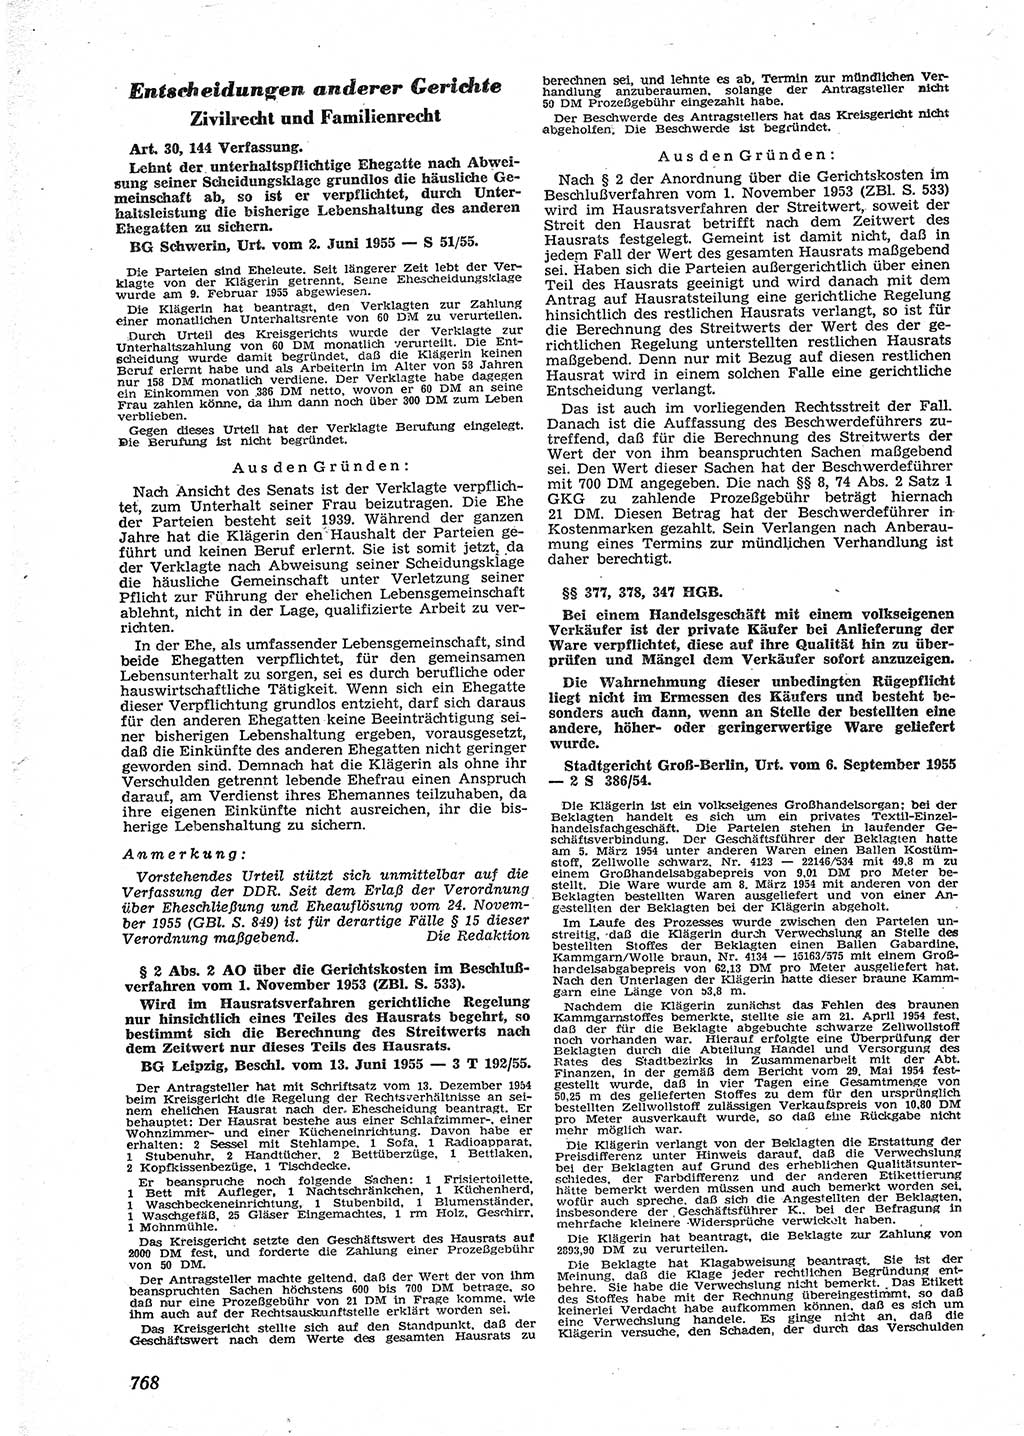 Neue Justiz (NJ), Zeitschrift für Recht und Rechtswissenschaft [Deutsche Demokratische Republik (DDR)], 9. Jahrgang 1955, Seite 768 (NJ DDR 1955, S. 768)